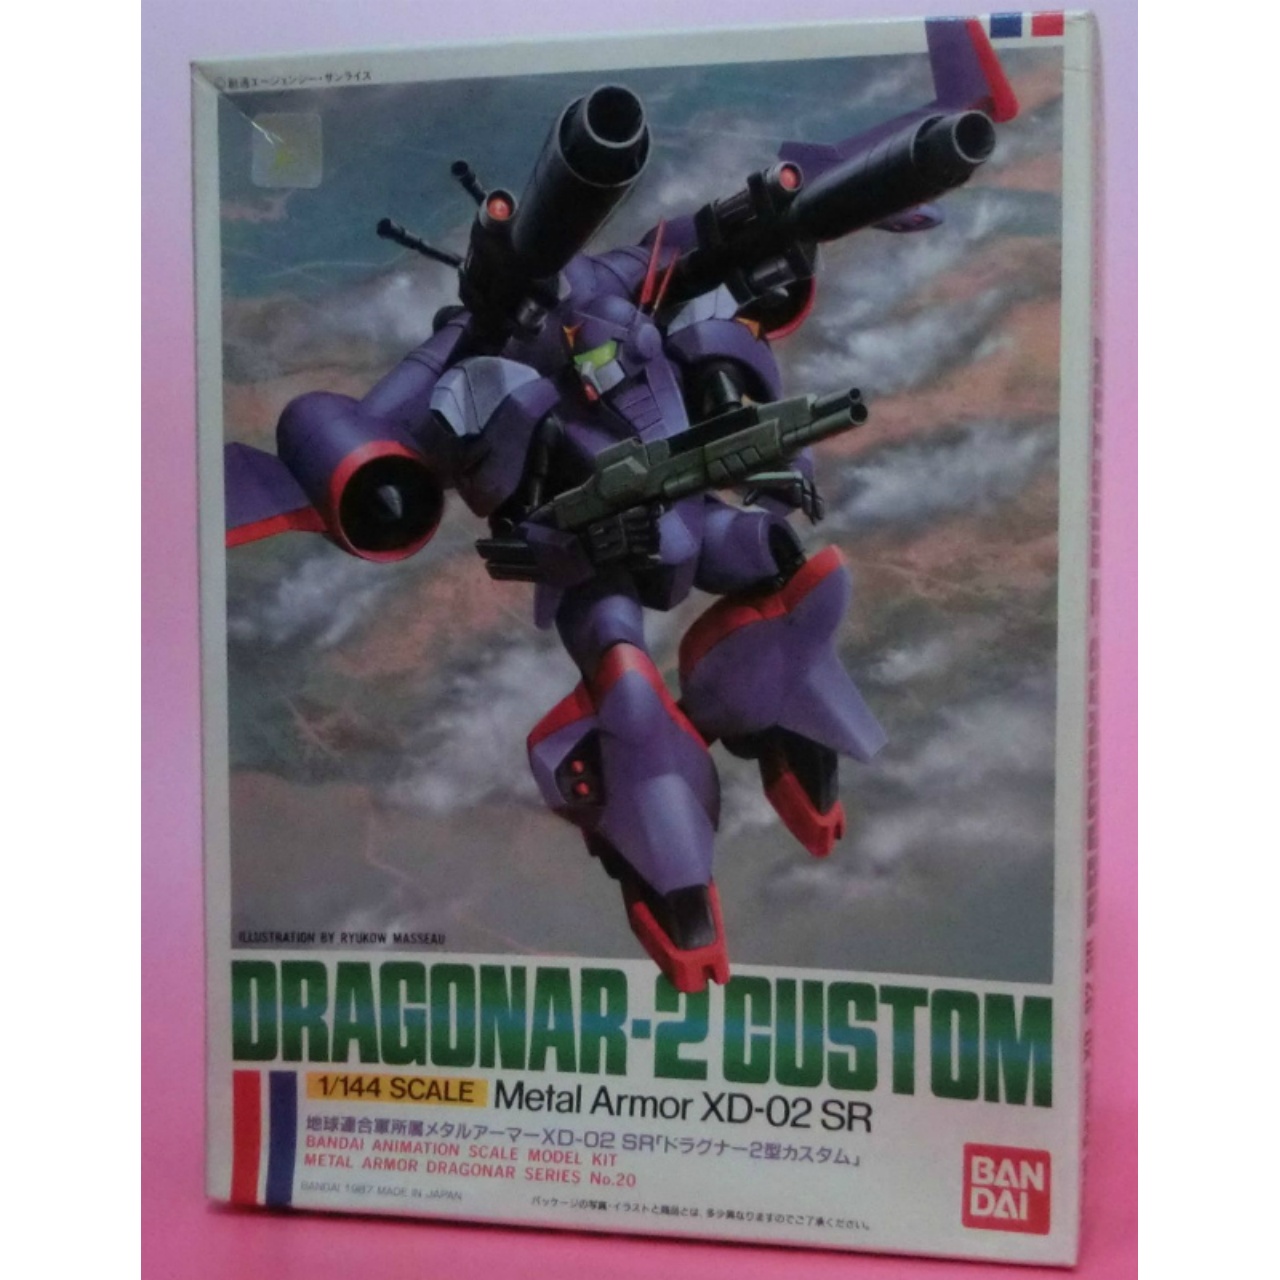 Bandai Plastic Model Dragonar 1/144 Dragunar-2 Custom